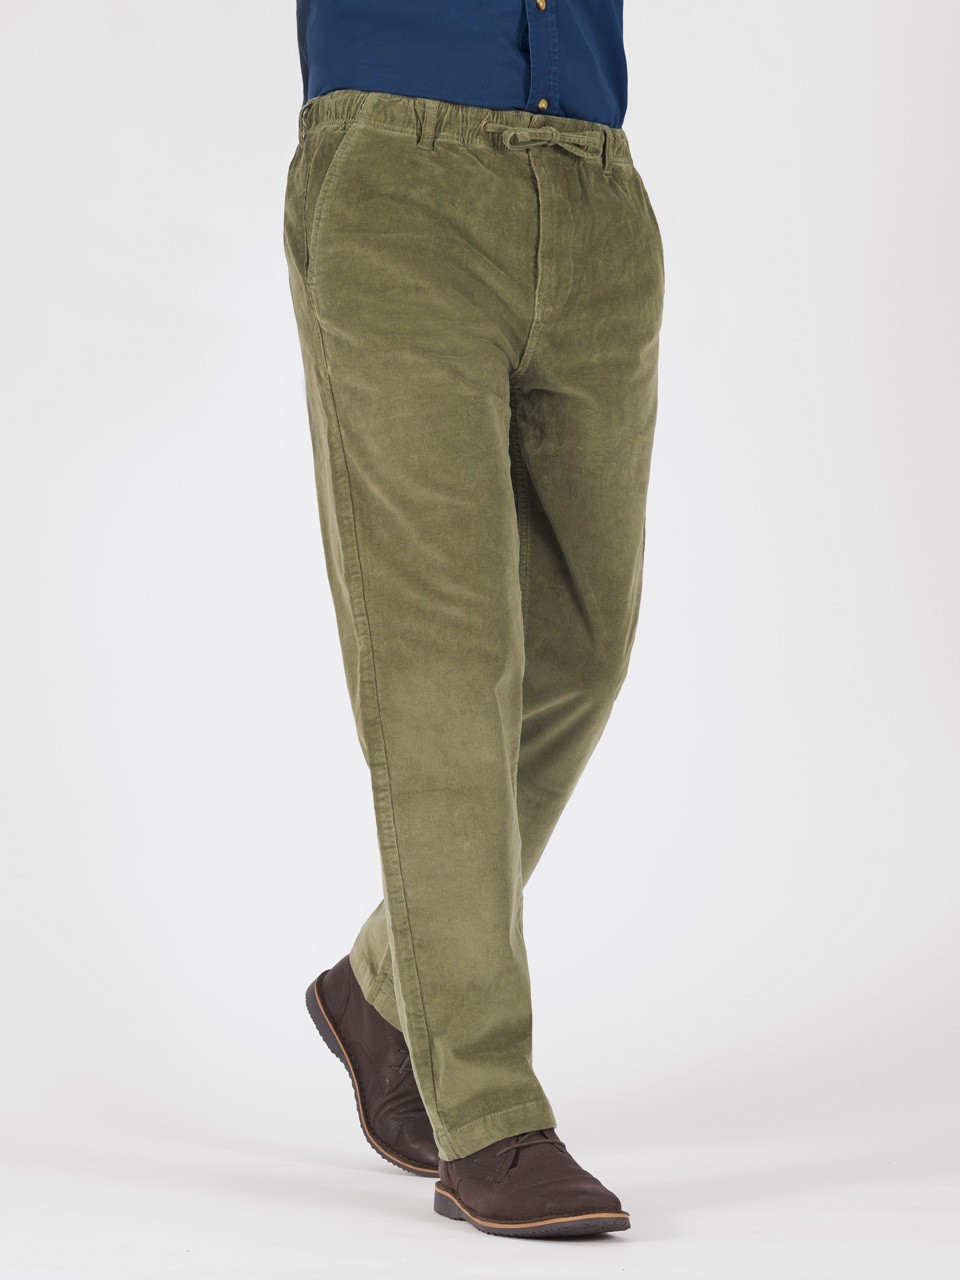 Hoggs of Fife Monarch II Moleskin Trousers - Lovat / 32 / 29 | Trousers,  Tattersall shirt, Mens jackets